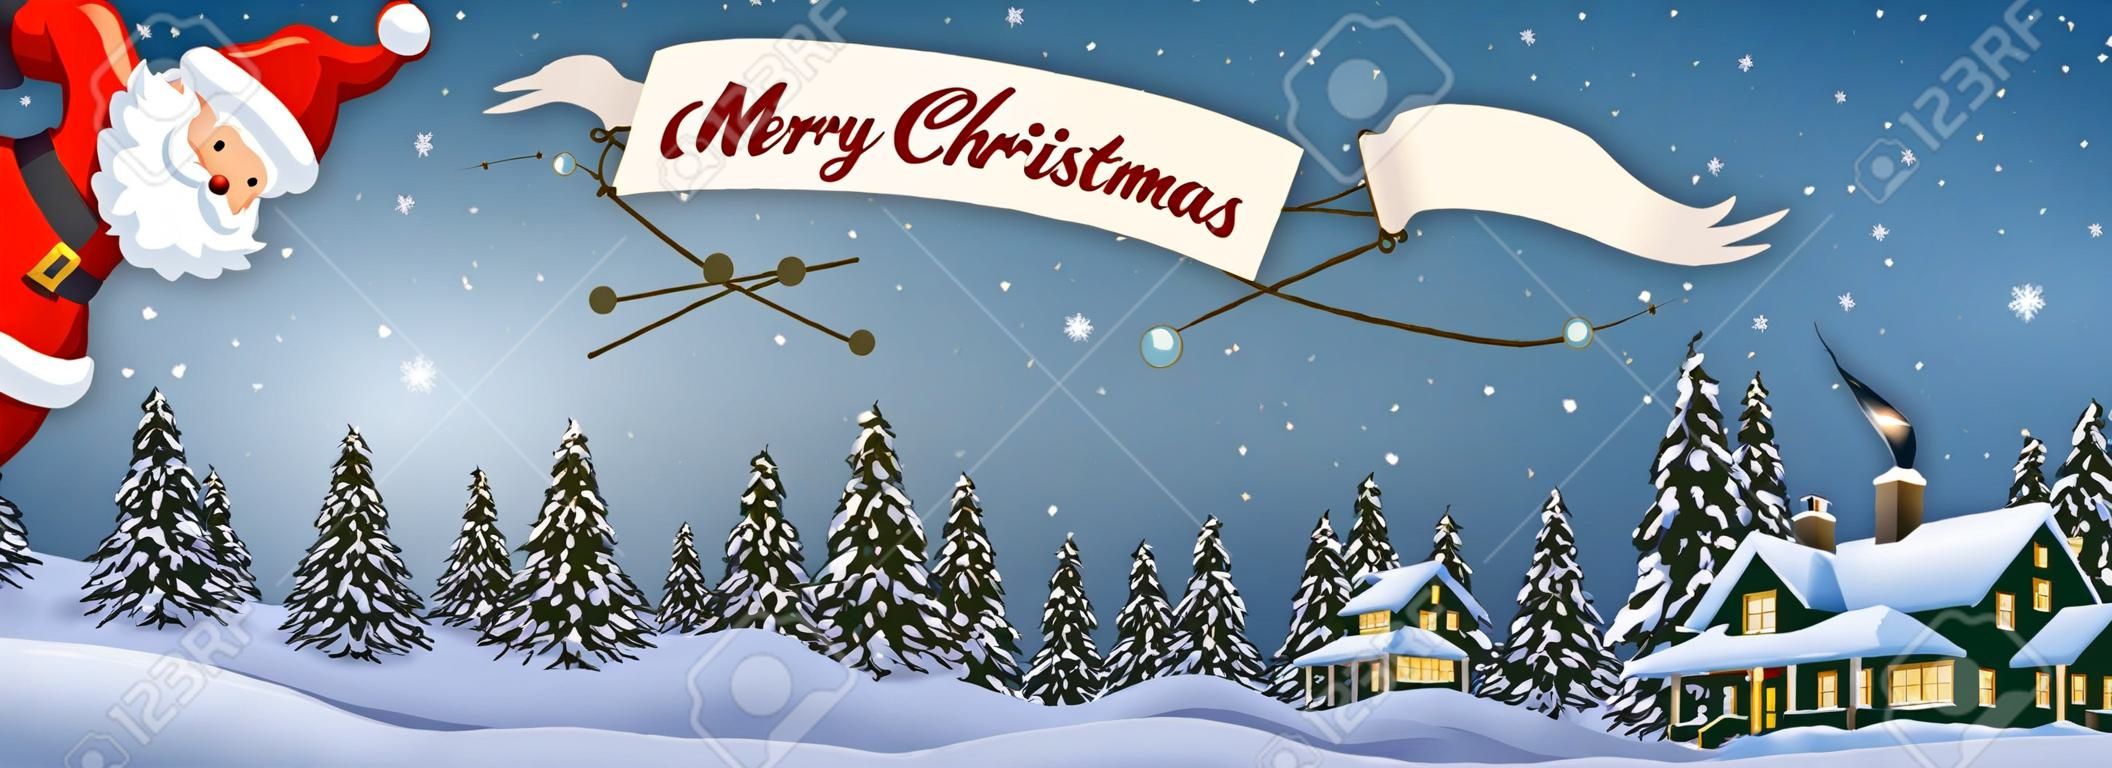 산타 클로스 만화 크리스마스 눈 덮인 풍경을 통해 밤에 메리 크리스마스 메시지 배너와 함께 비행기에 비행